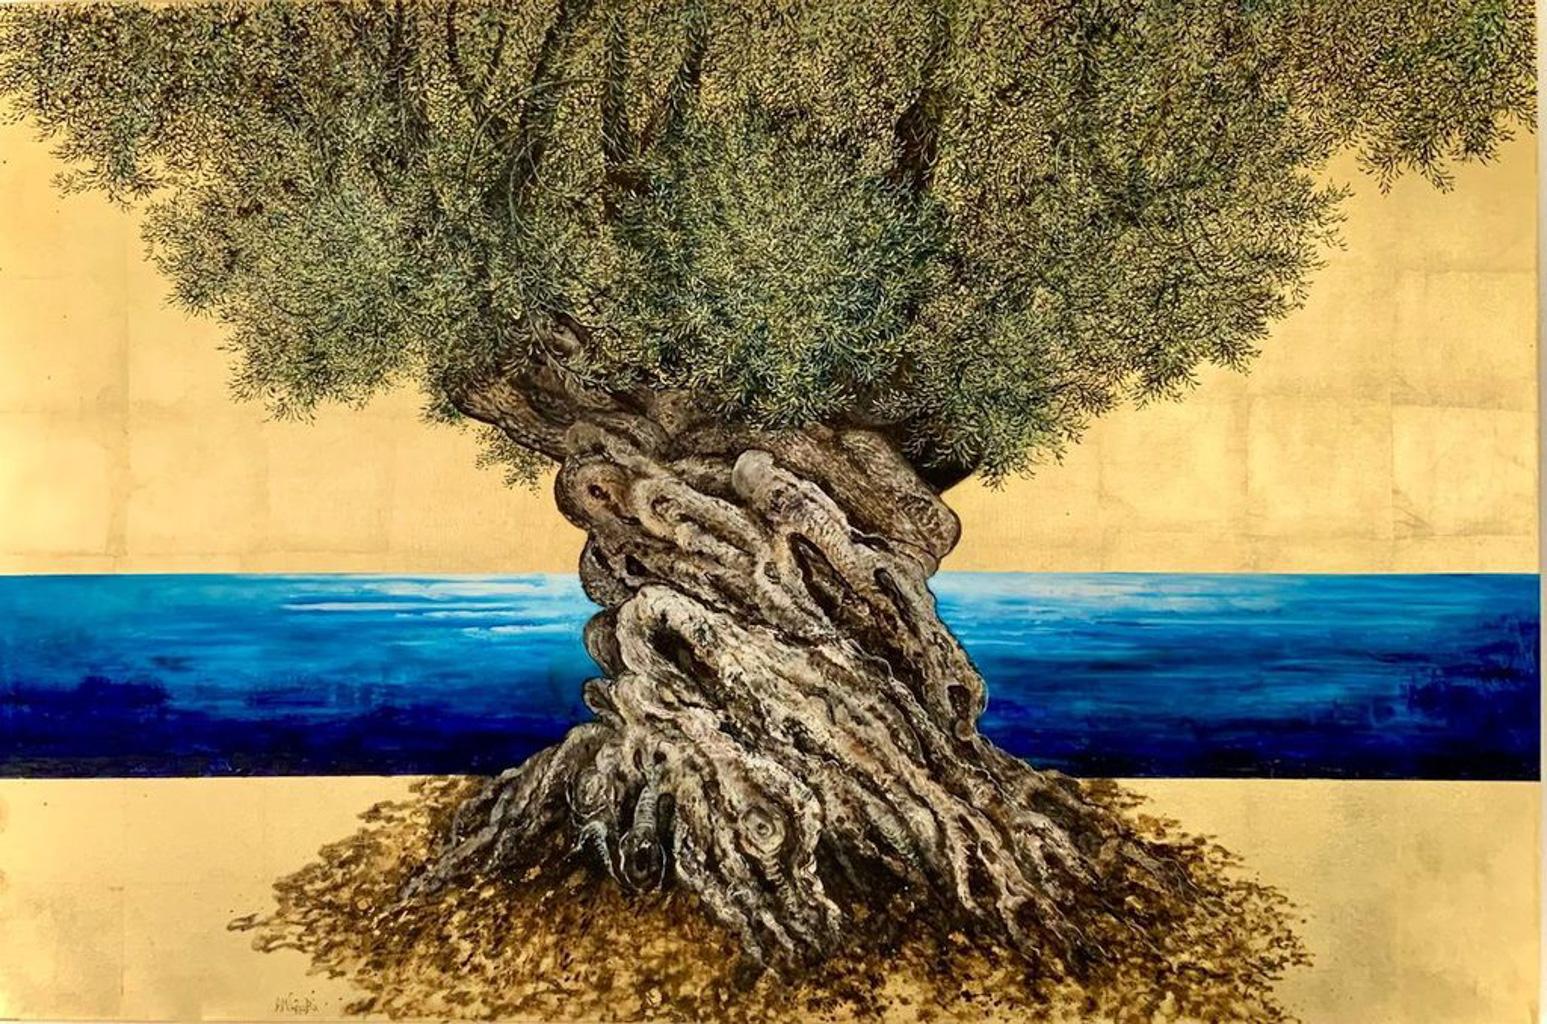 „Make Room for the Time“, Öl- und Blattgoldgemälde mit Olivenbaum und blauem Meer, Öl